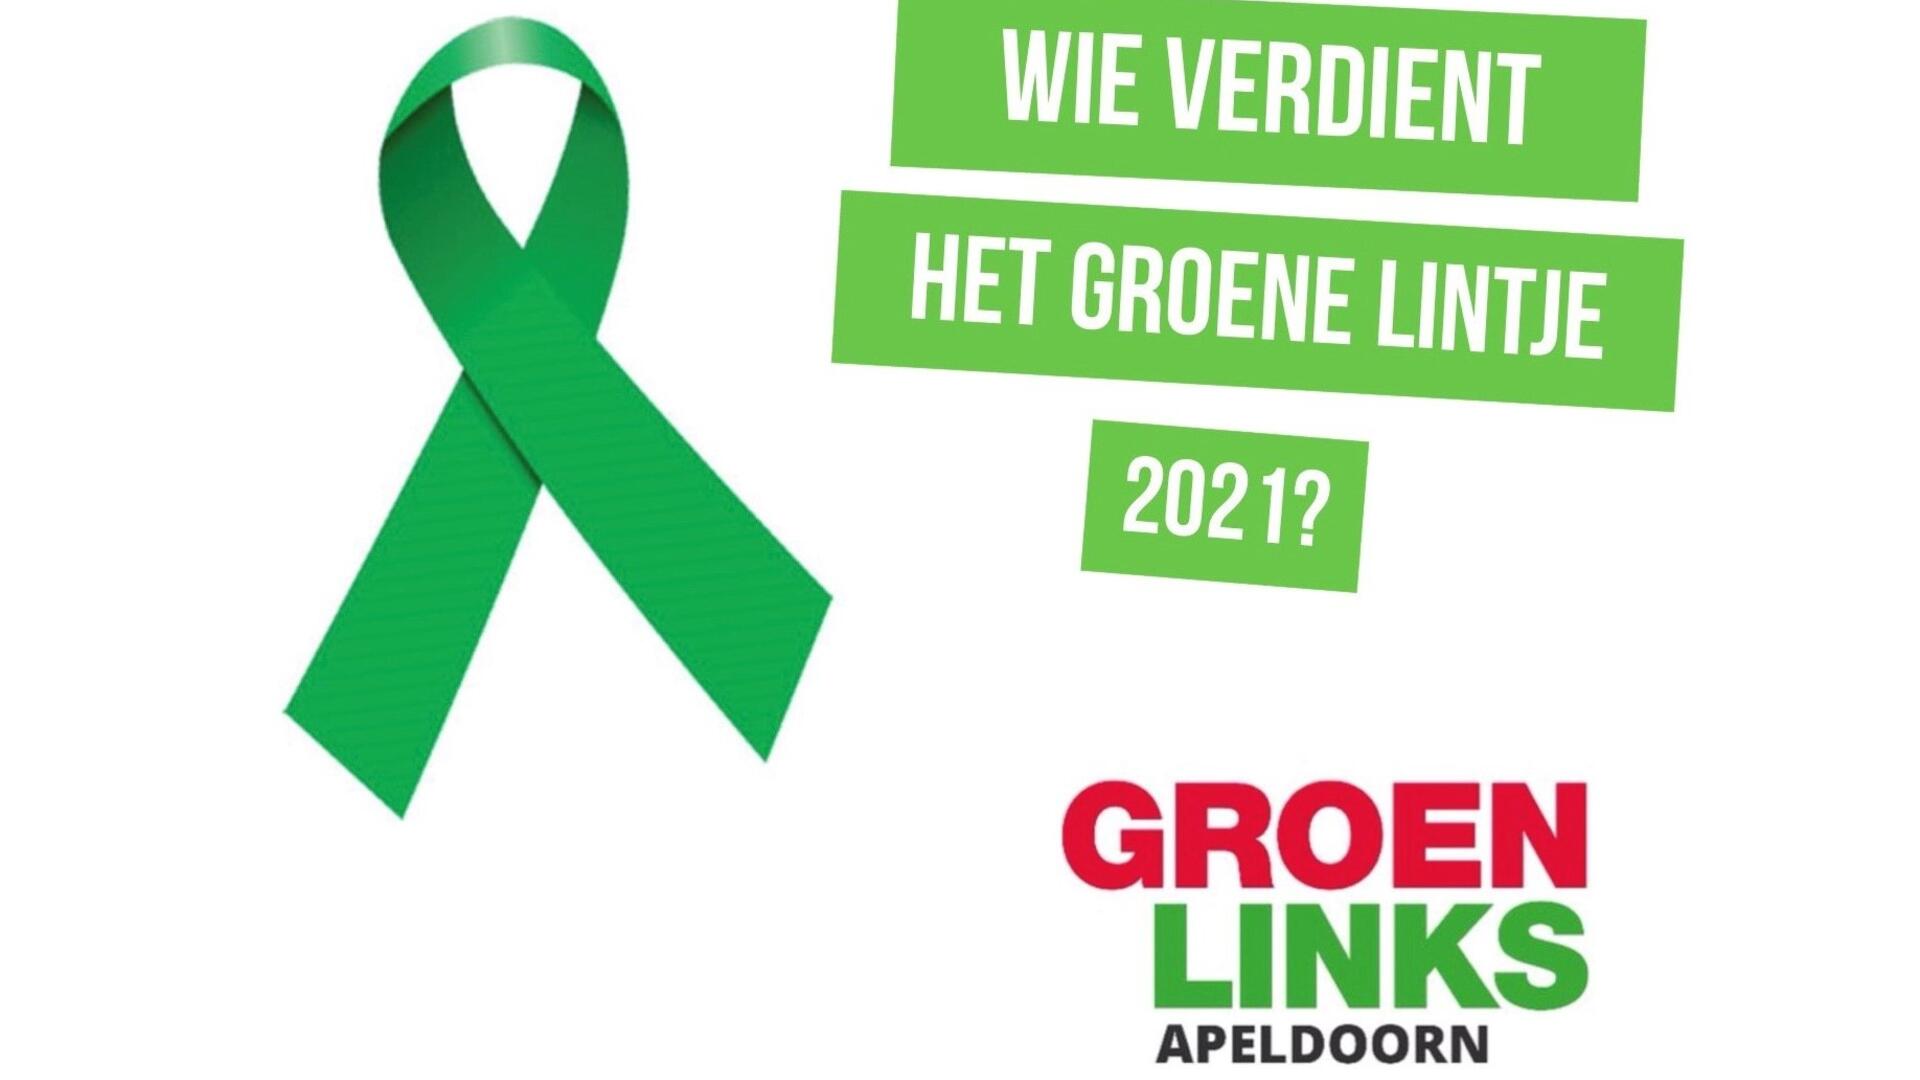 Nominatie groene lintje 2021